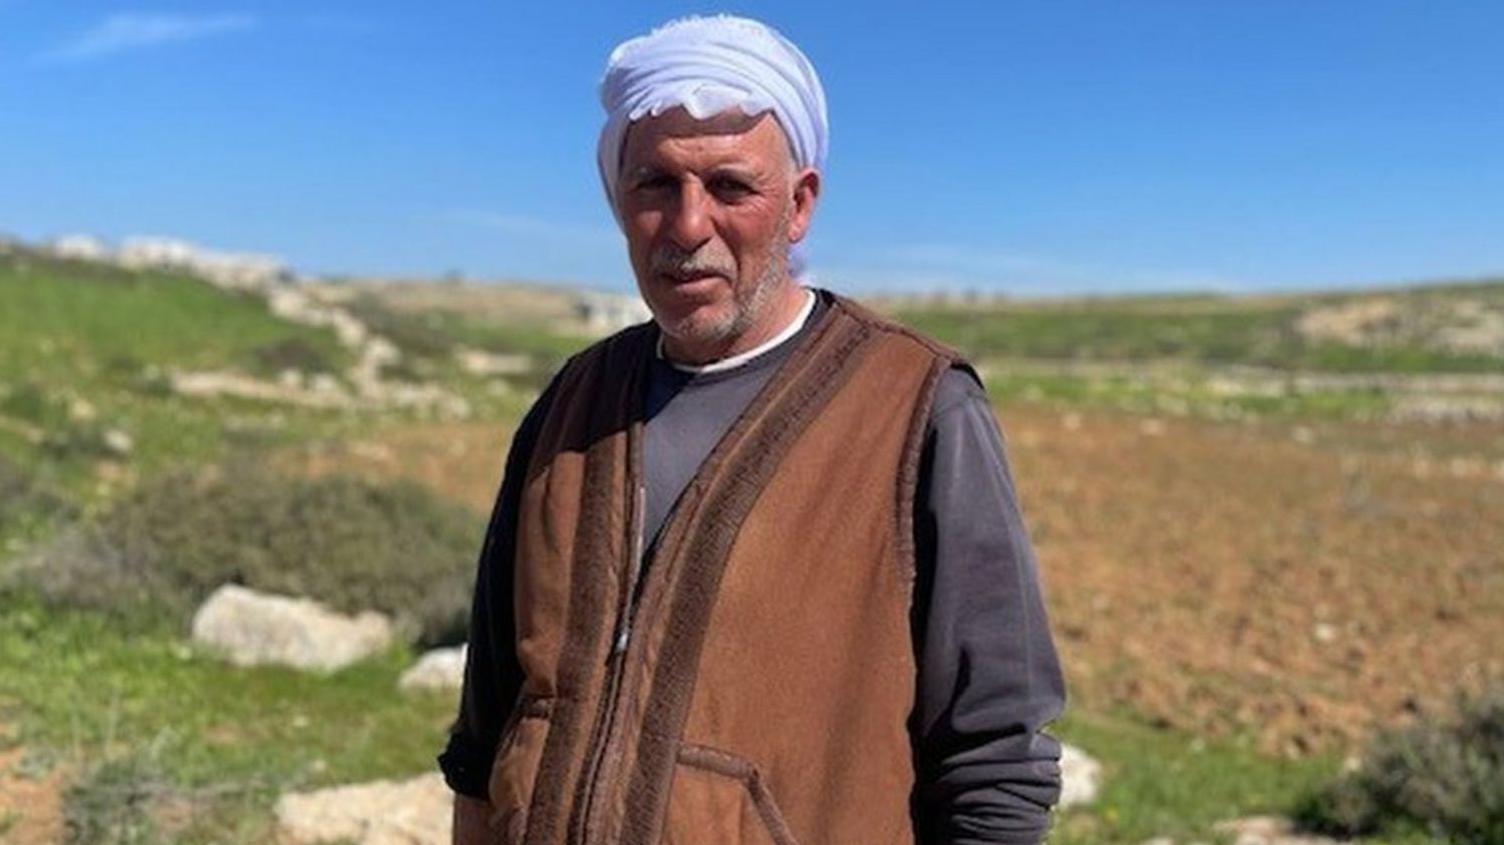 يقول المزارع الفلسطيني فارس سمامرة إنه غادر منزله مع عائلته، بعد تعرضه لهجوم من قبل مستوطنين إسرائيليين